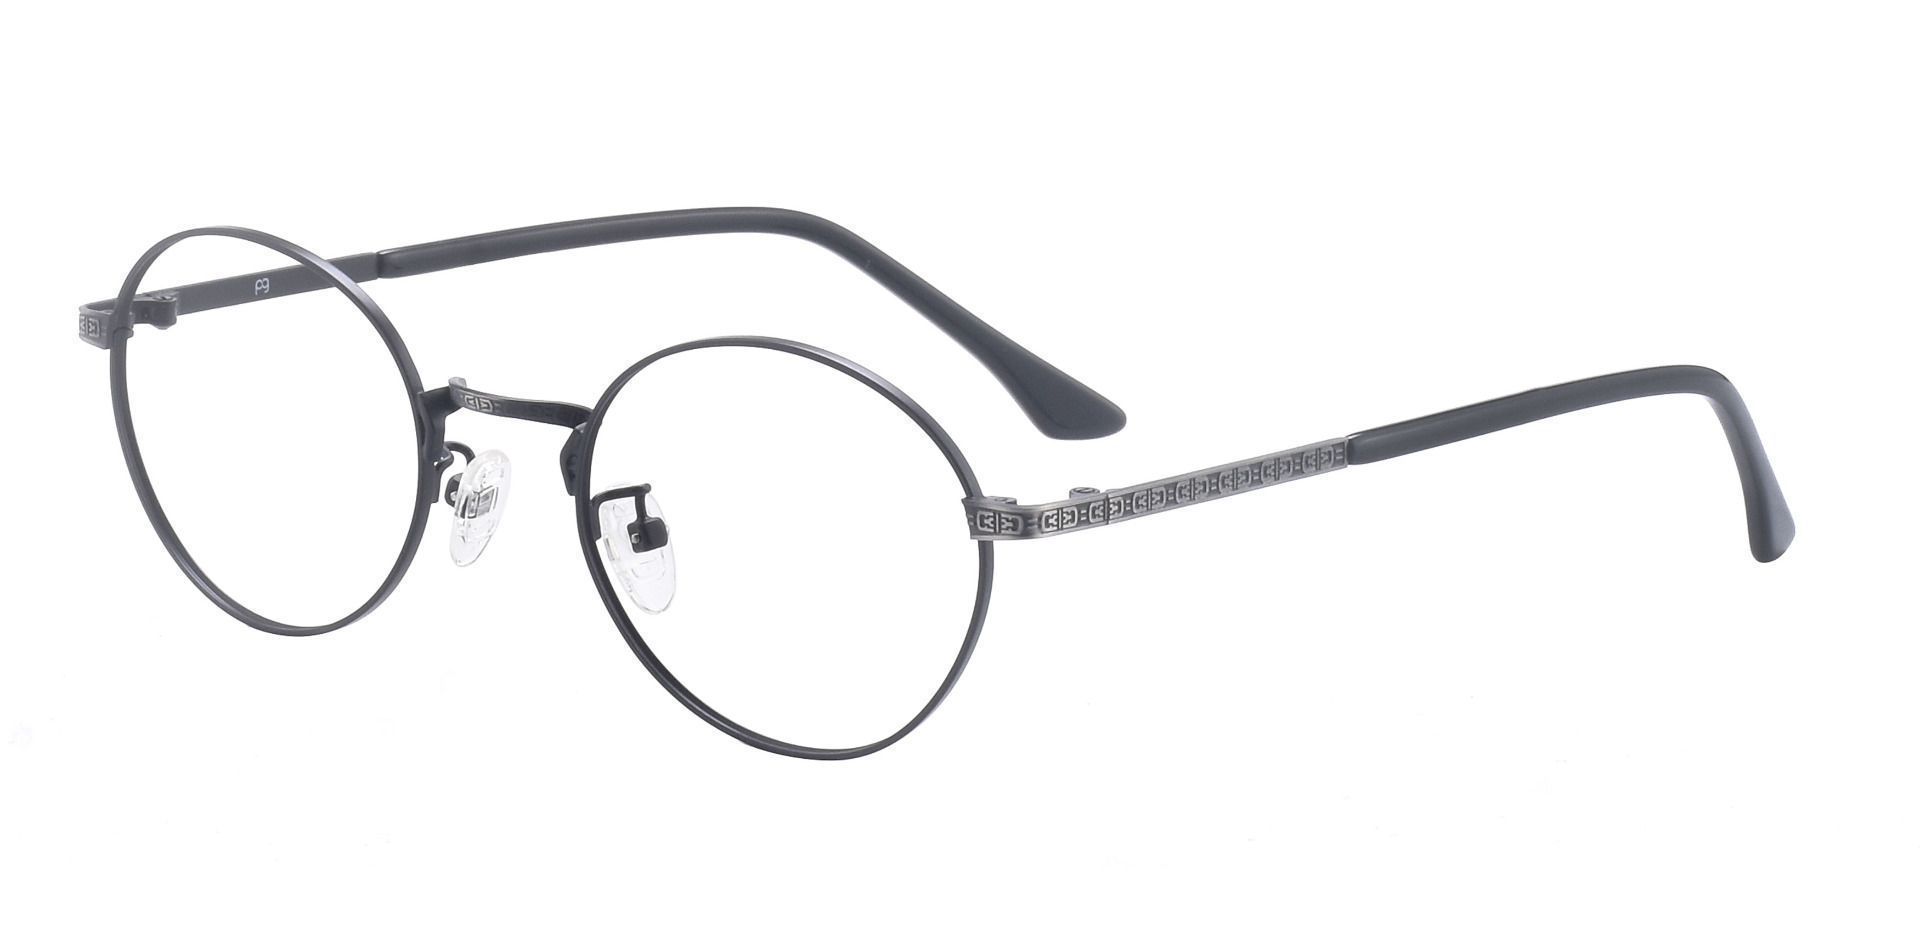 Tristan Round Non-Rx Glasses - Black